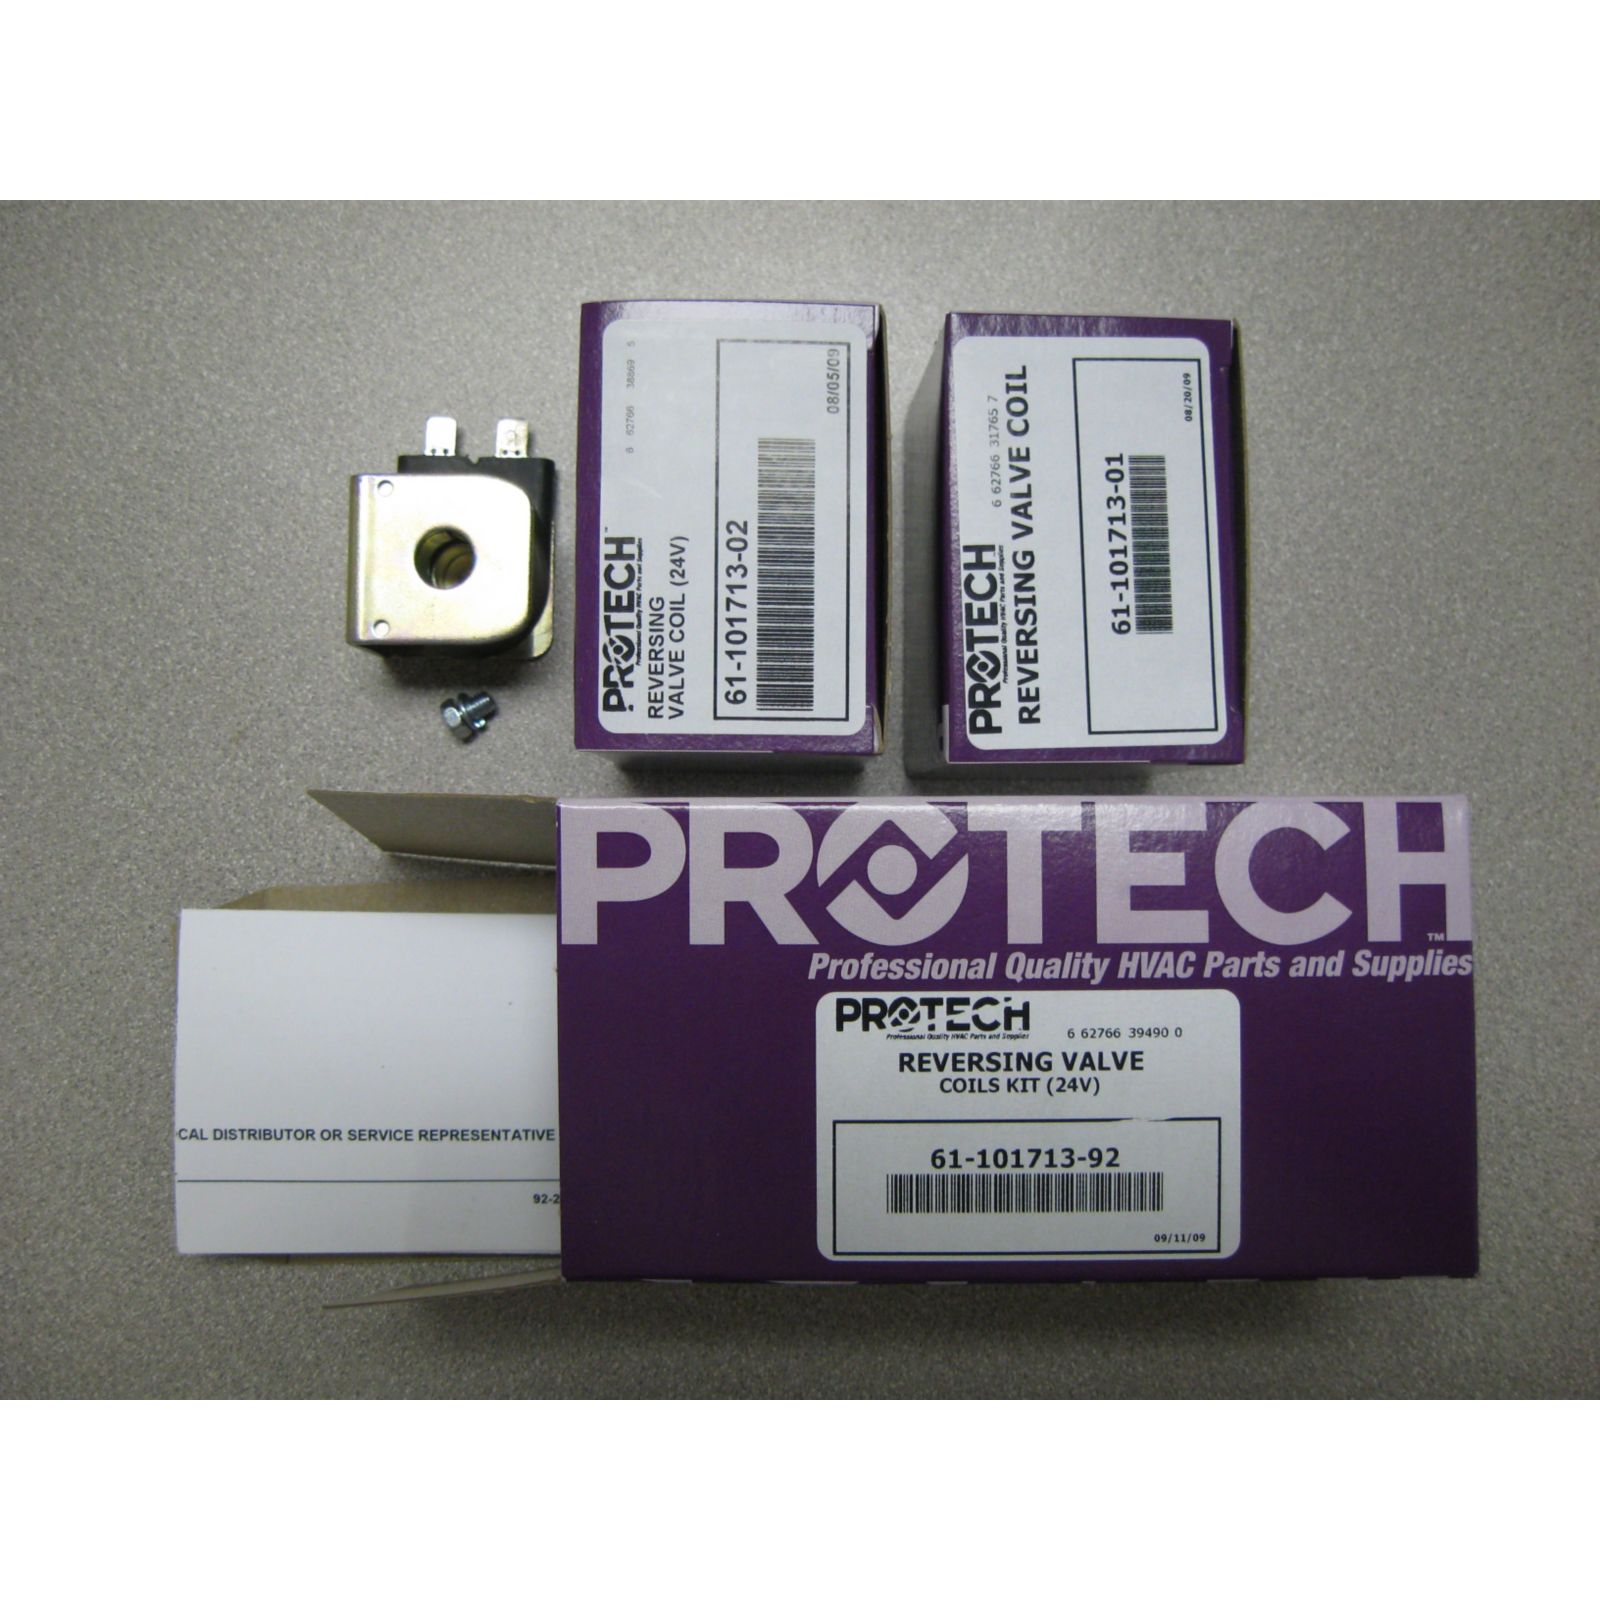 PROTECH 61-101713-92 - Kit - Reversing Valve Coils (24V)